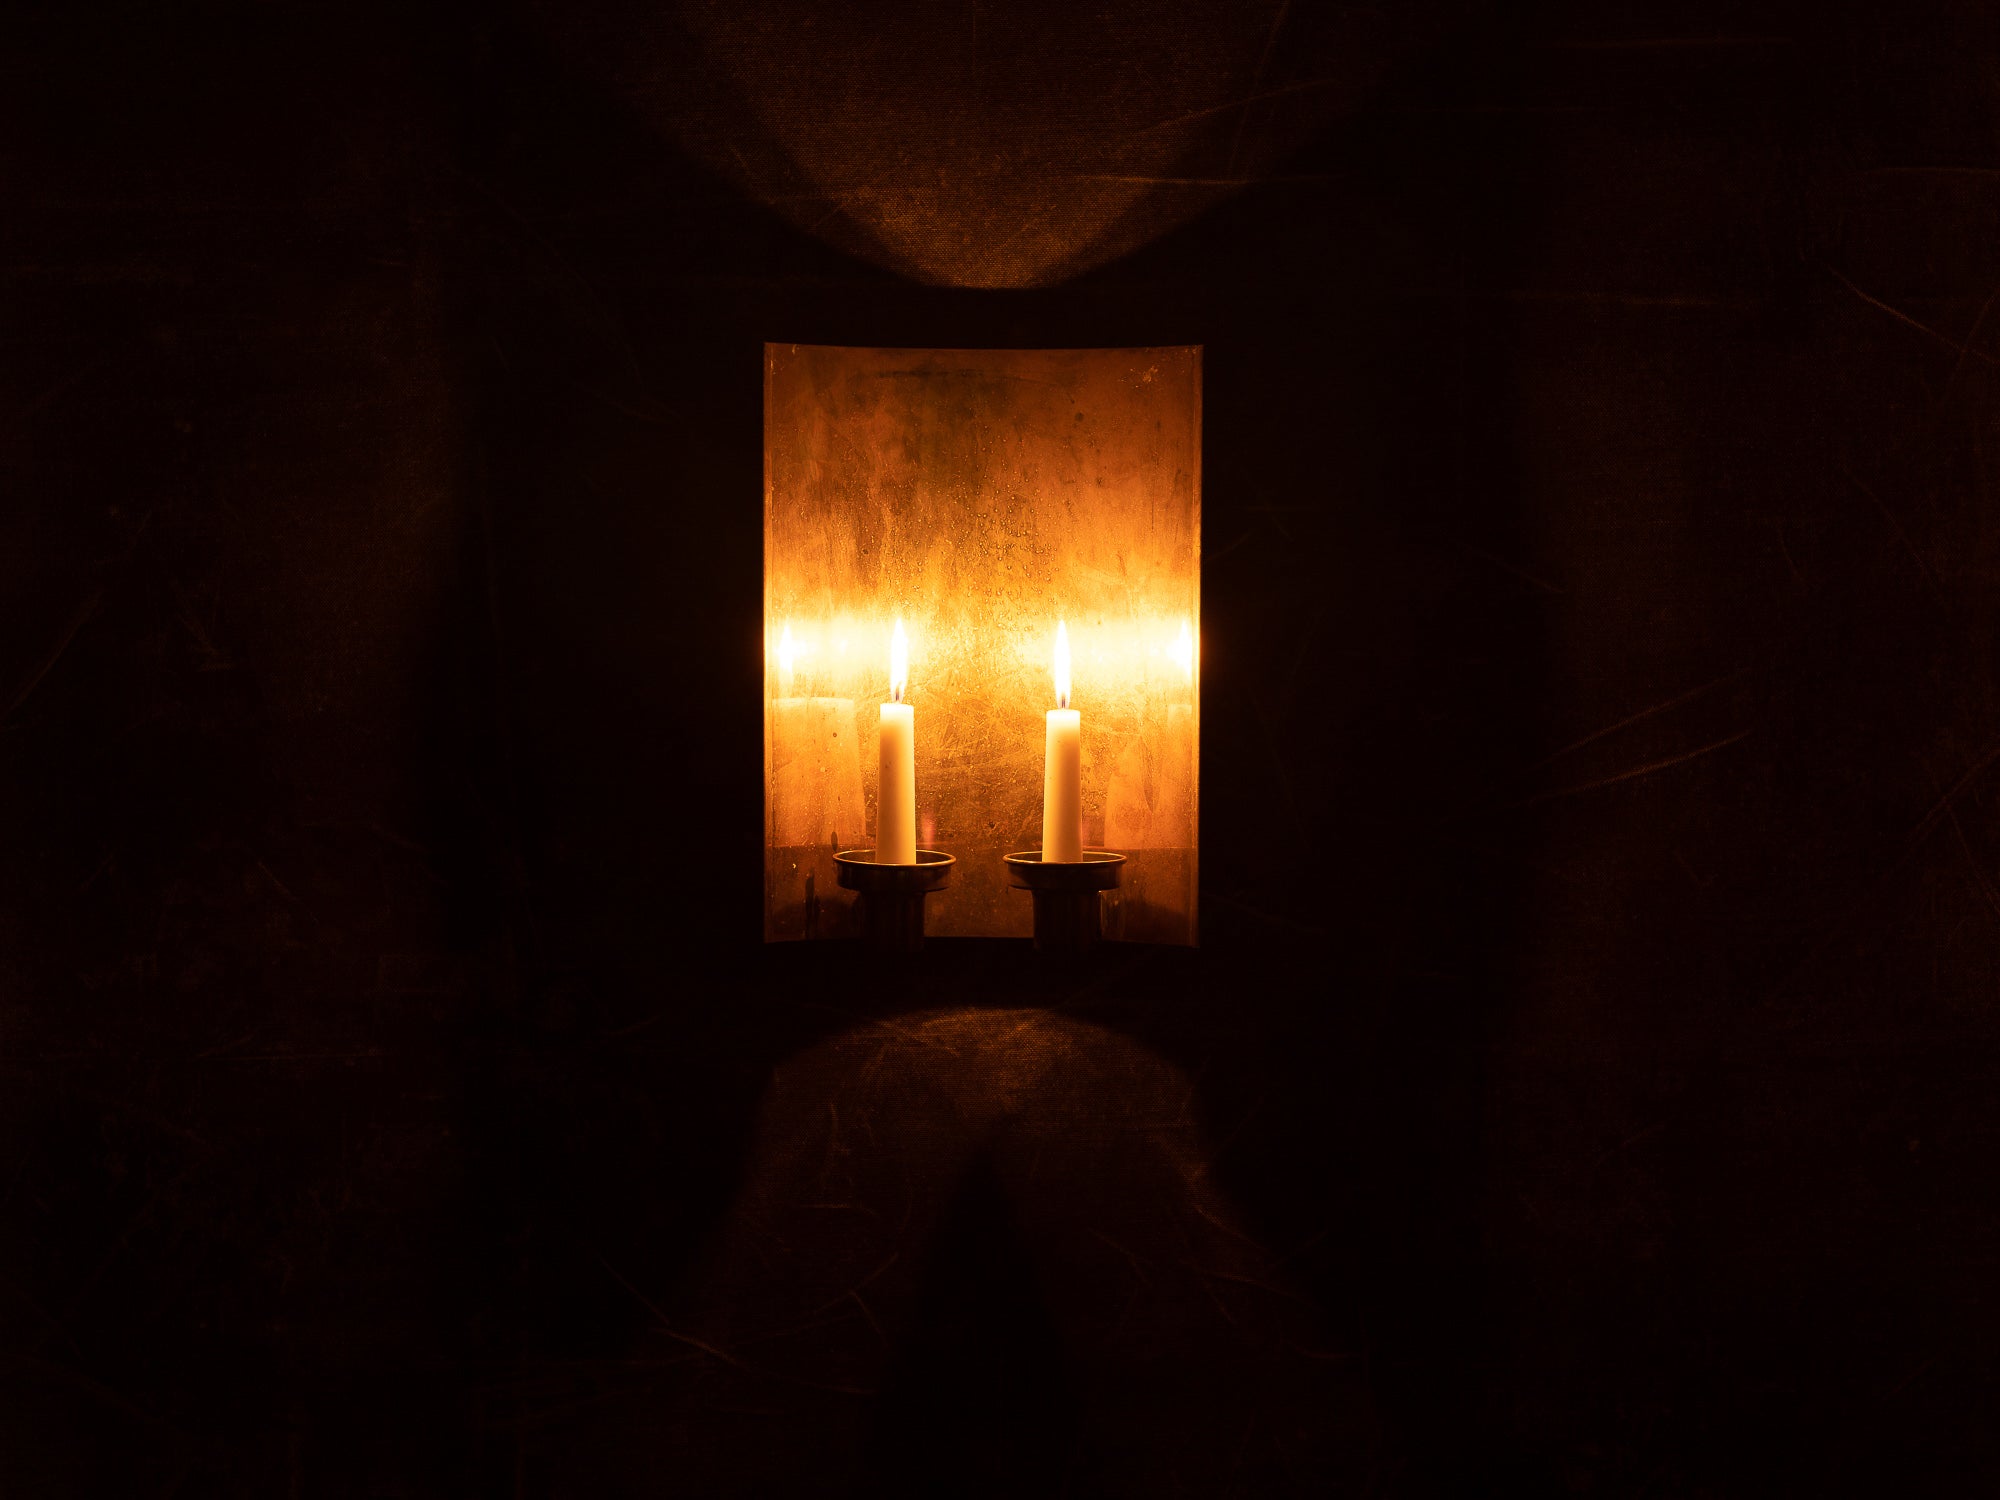 Important candélabre d'applique moderniste à deux lumières en laiton, Danemark (vers 1965-70)..Large unique modernist brass wall hanging candle holders, Denmark (ca. 1965-70)